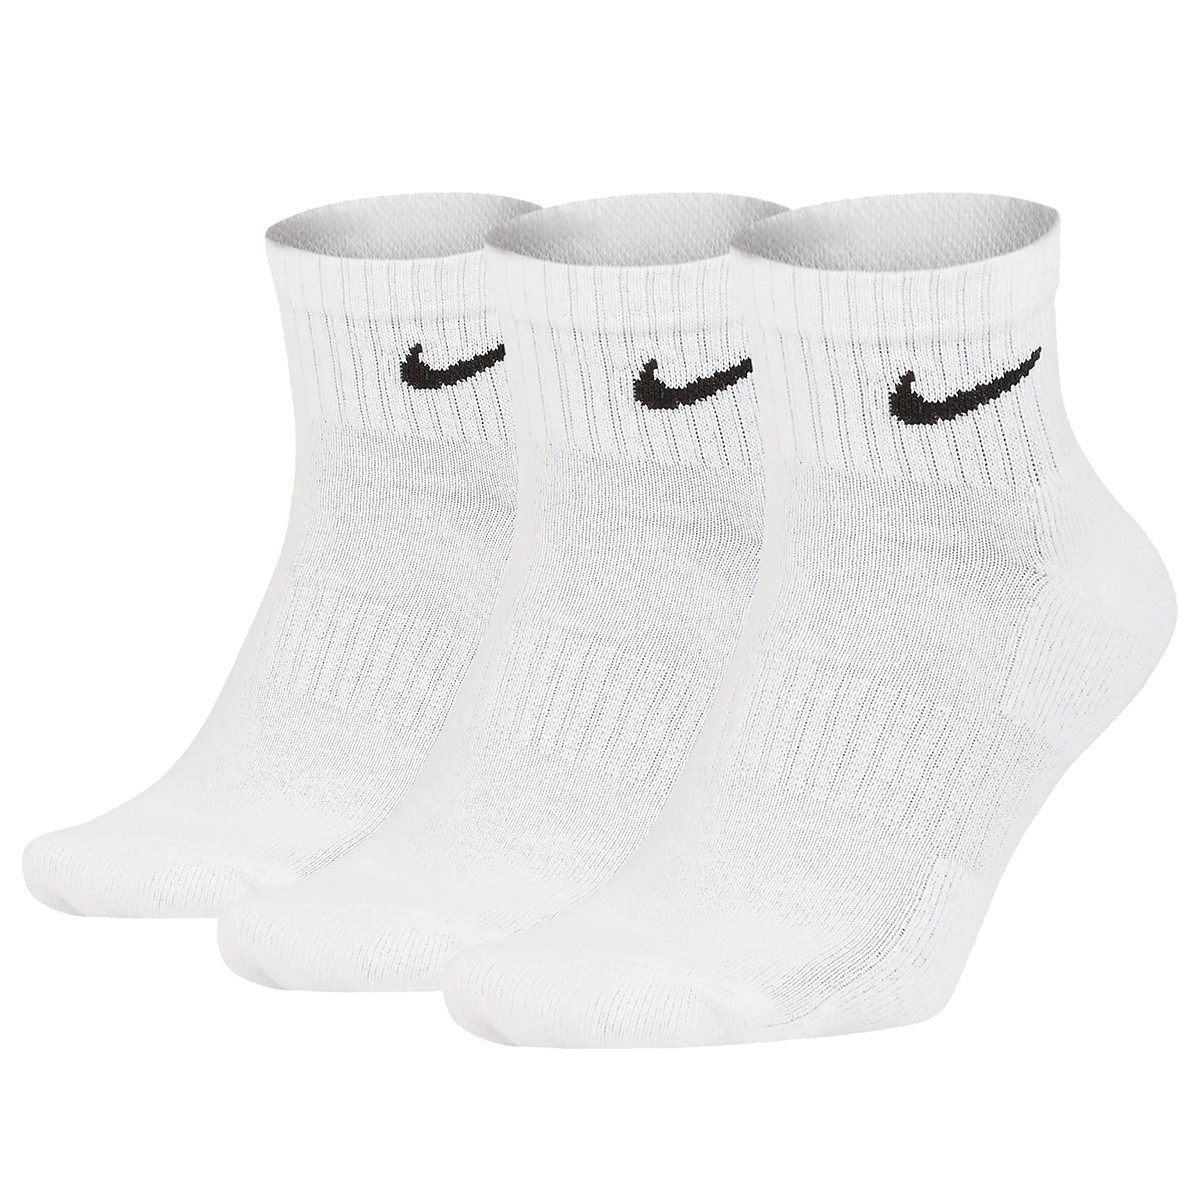 Nike Kurzsocken Lightweight Ankle 3P (3er-Pack)